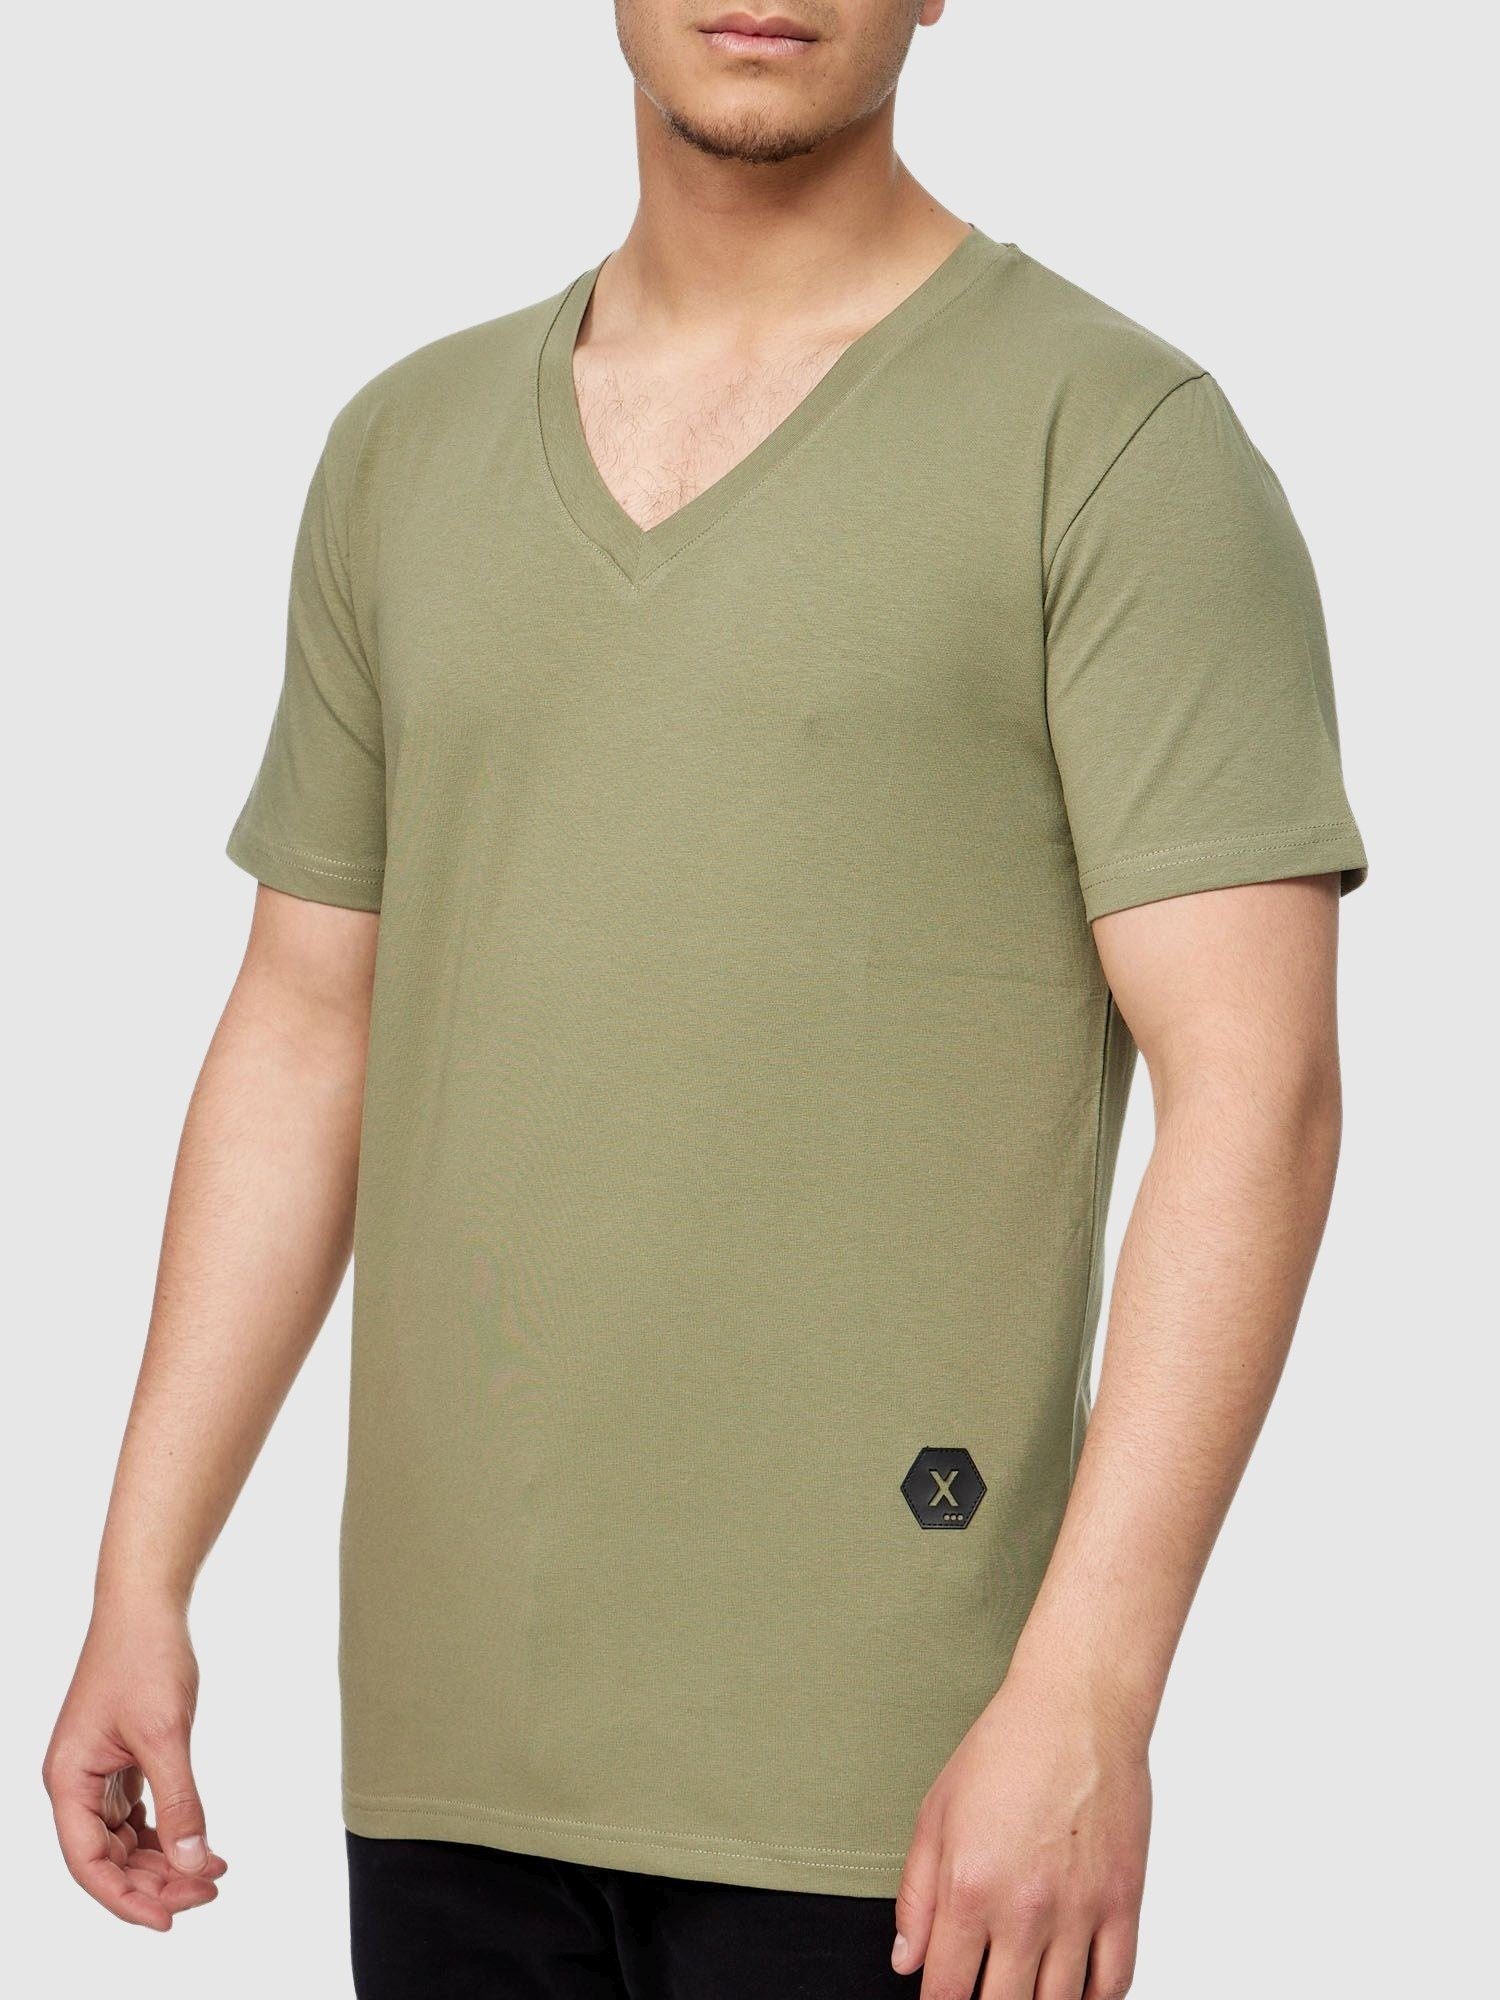 Kurzarmshirt Grün Casual Shirt für Kayna John John Kayna Tshirt Polo (Shirt Tee T-Shirt 1-tlg) Männer Tee, Poloshirt T Herren Fitness T-Shirt Polo Freizeit